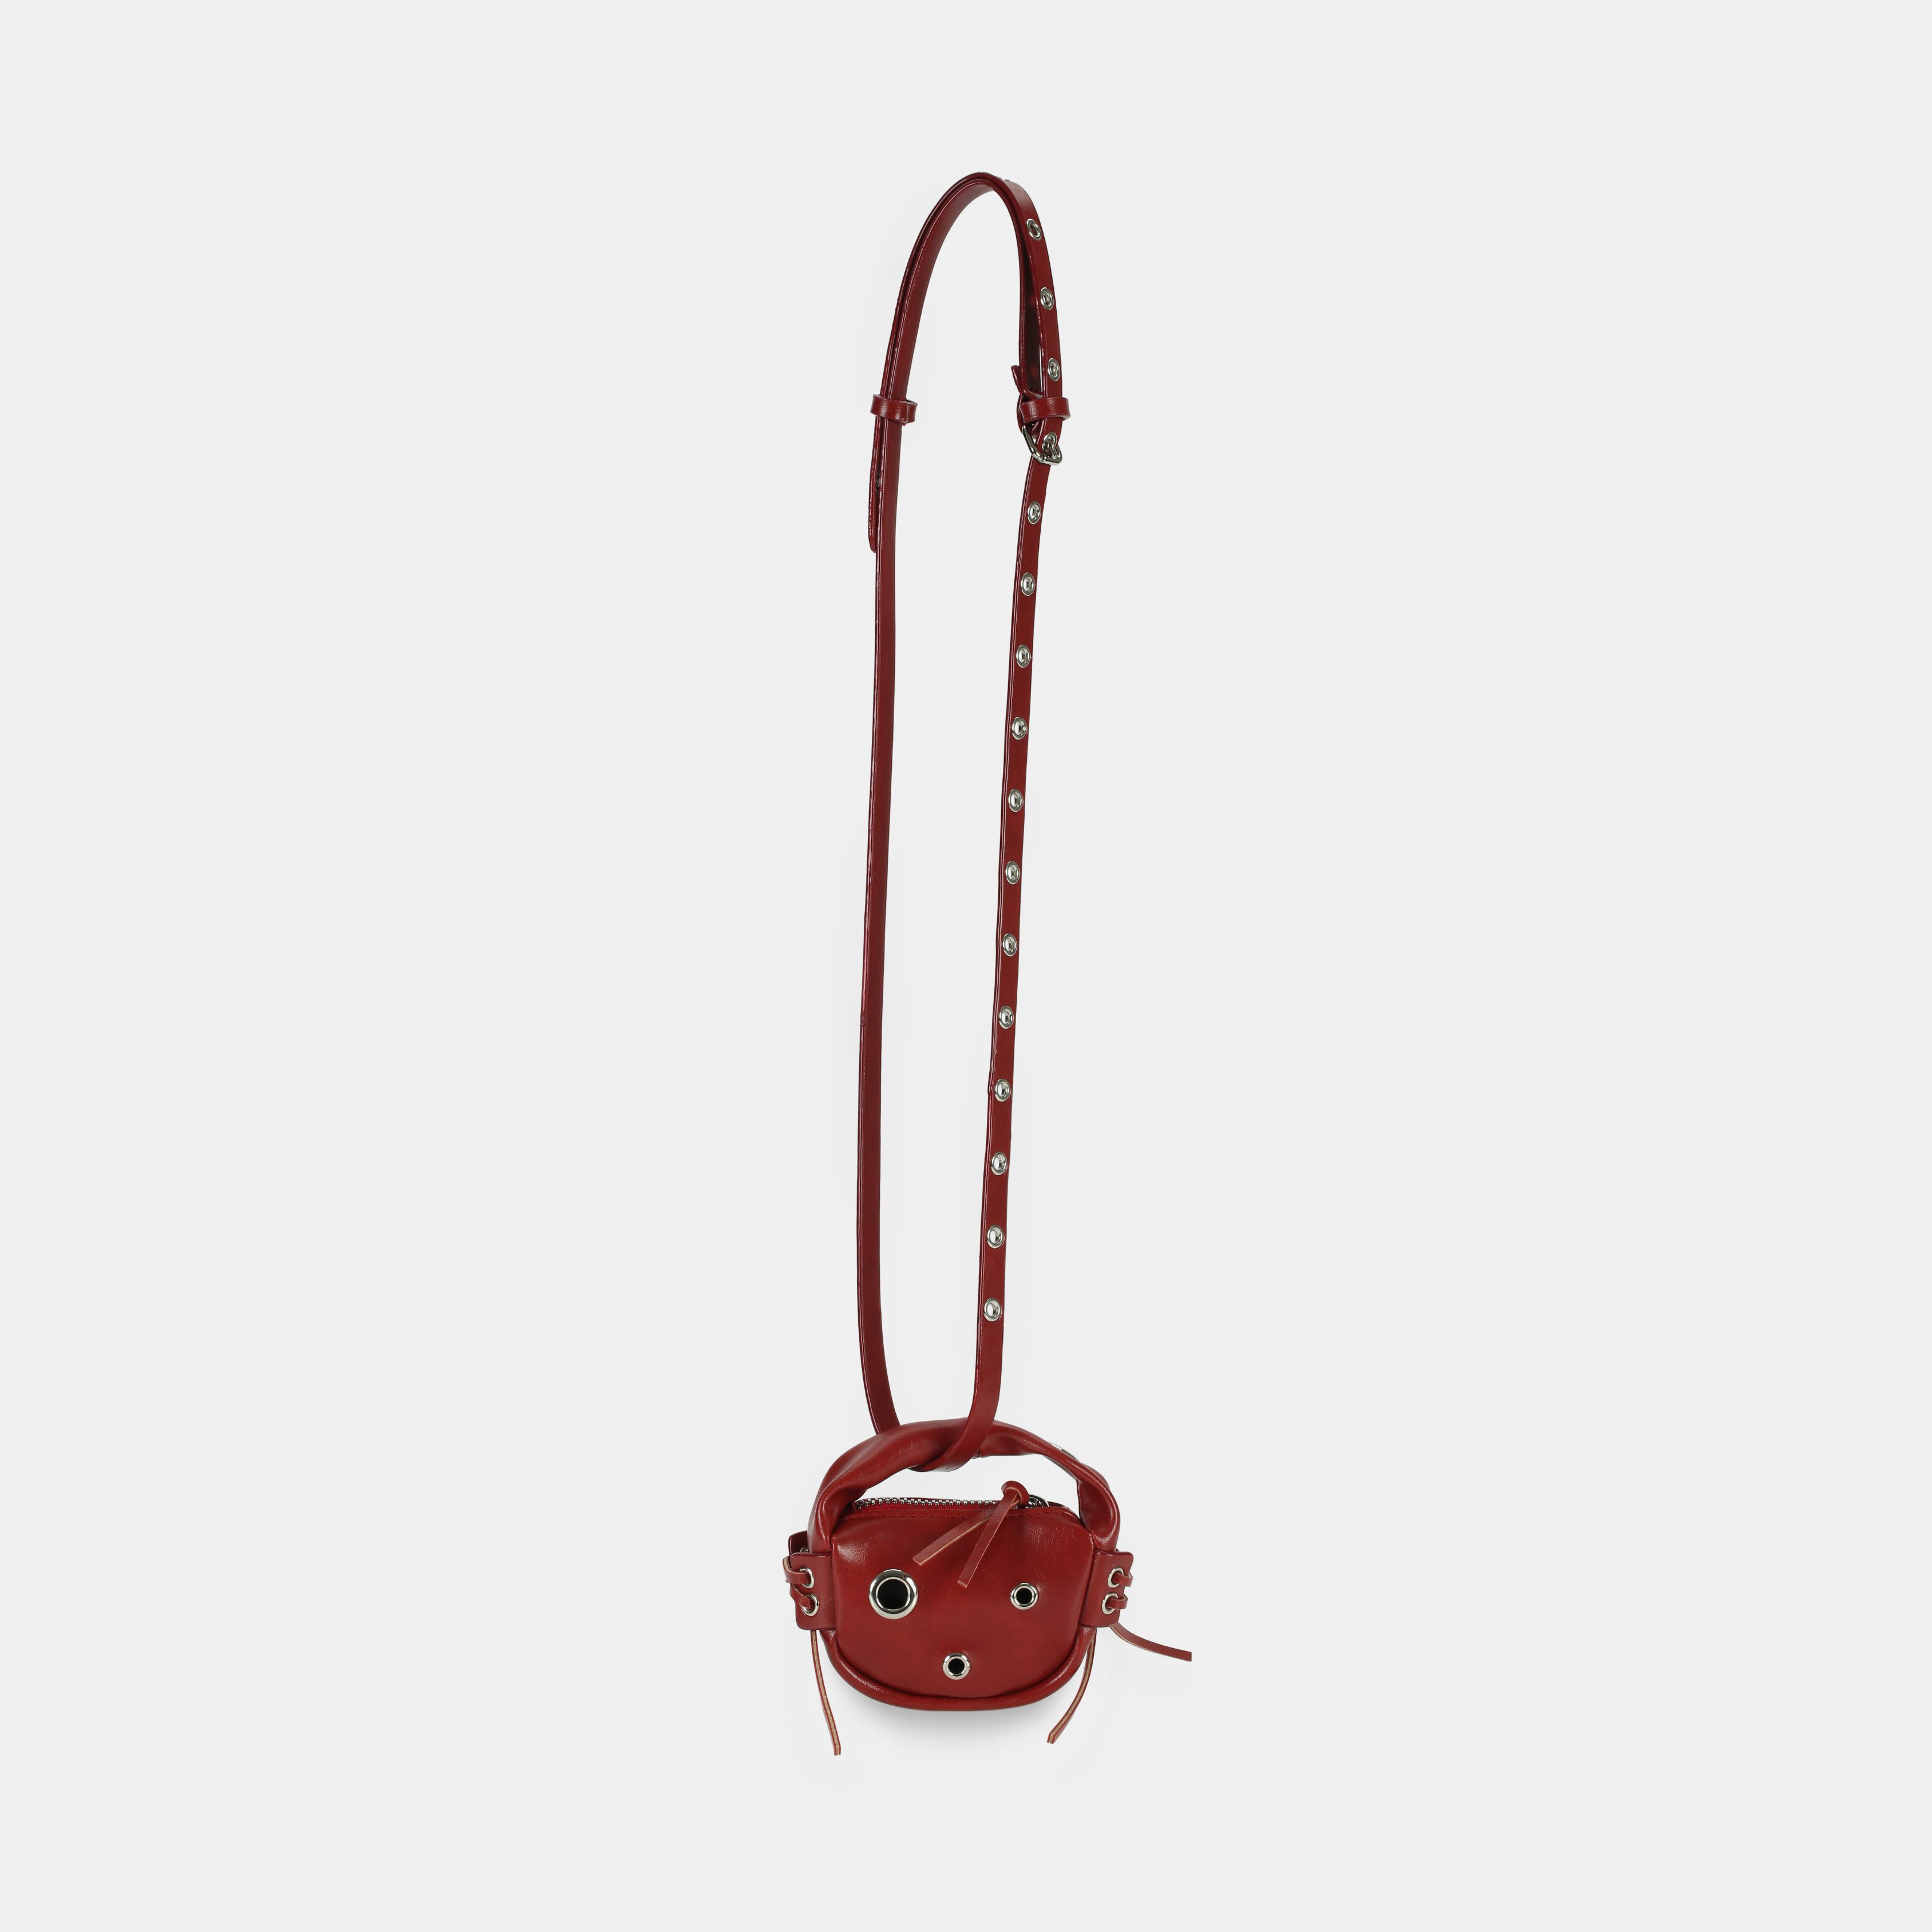 Túi xách MICRO LACE màu đỏ cherry